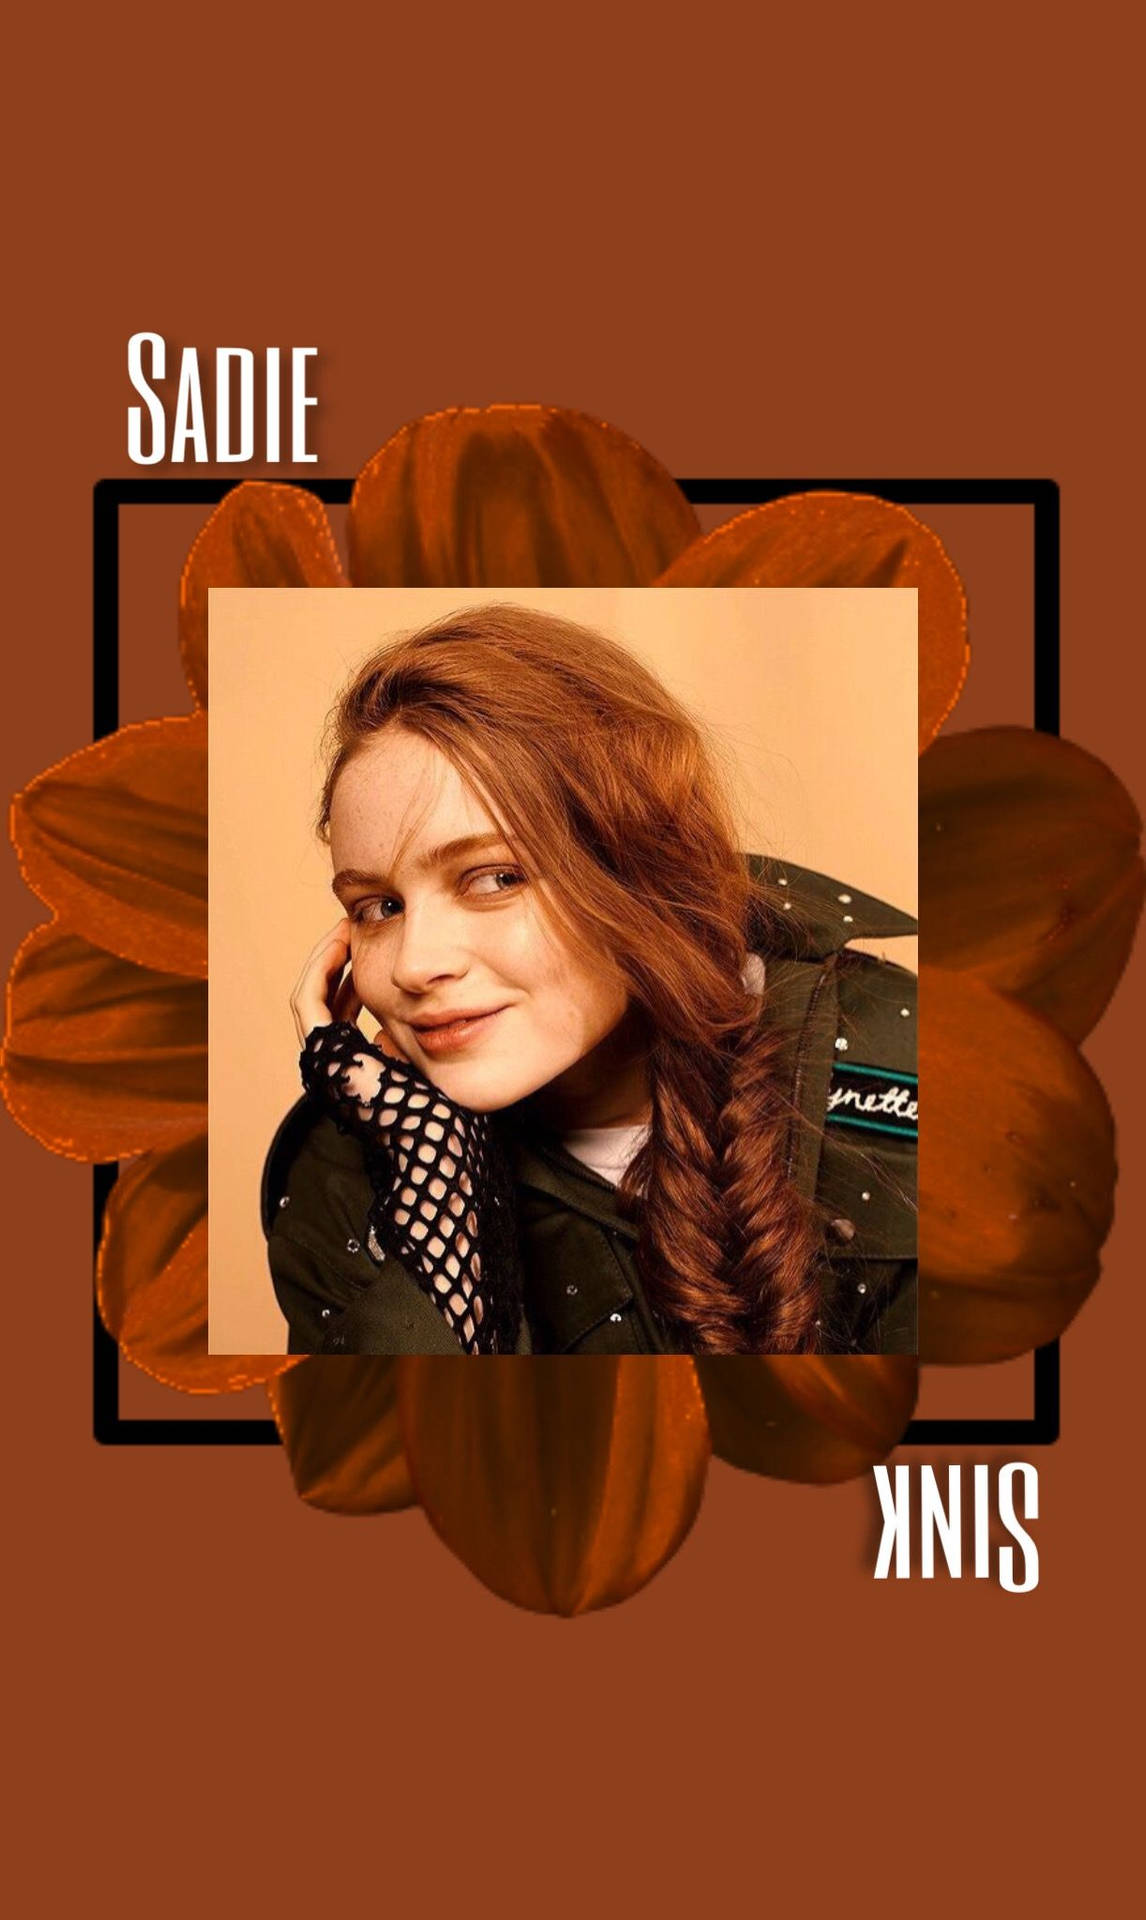 Digital Poster Of Sadie Sink Background